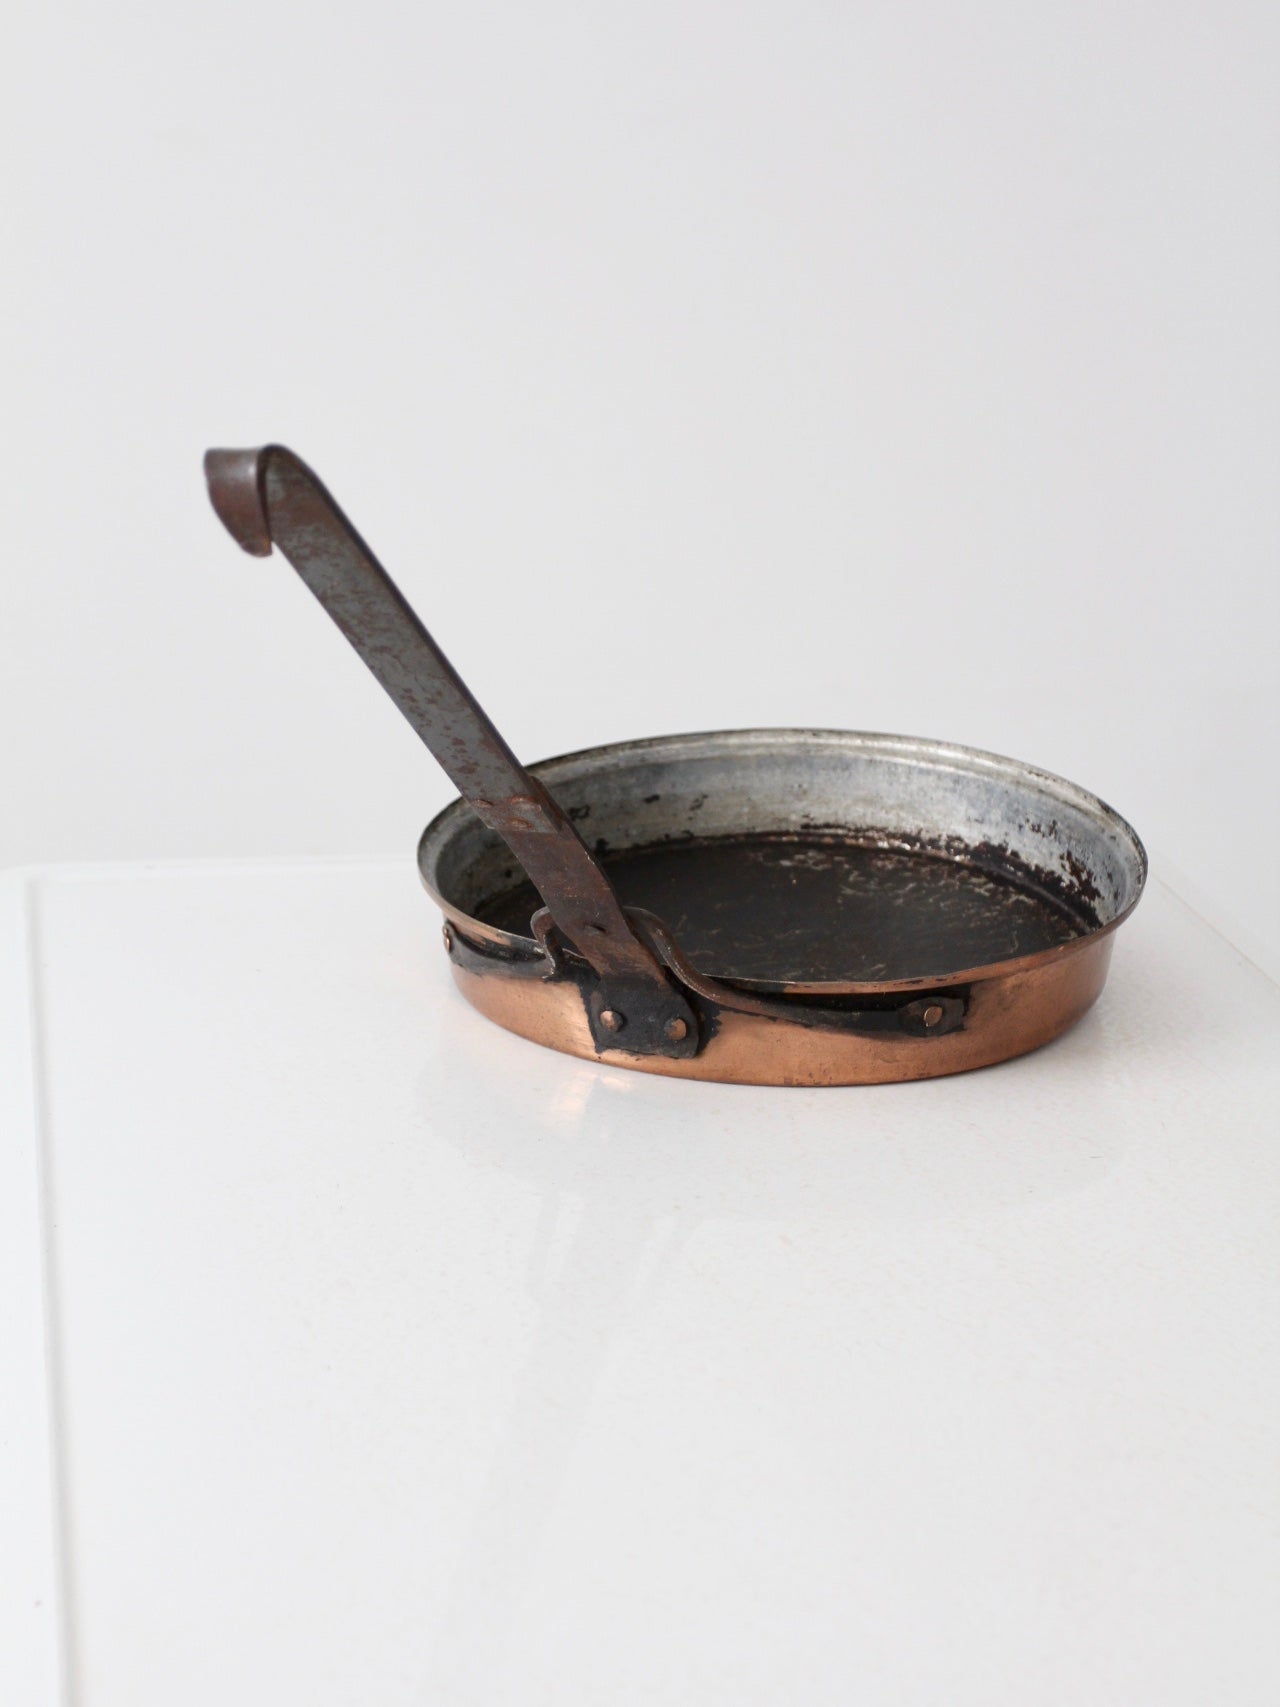 antique copper saute pan